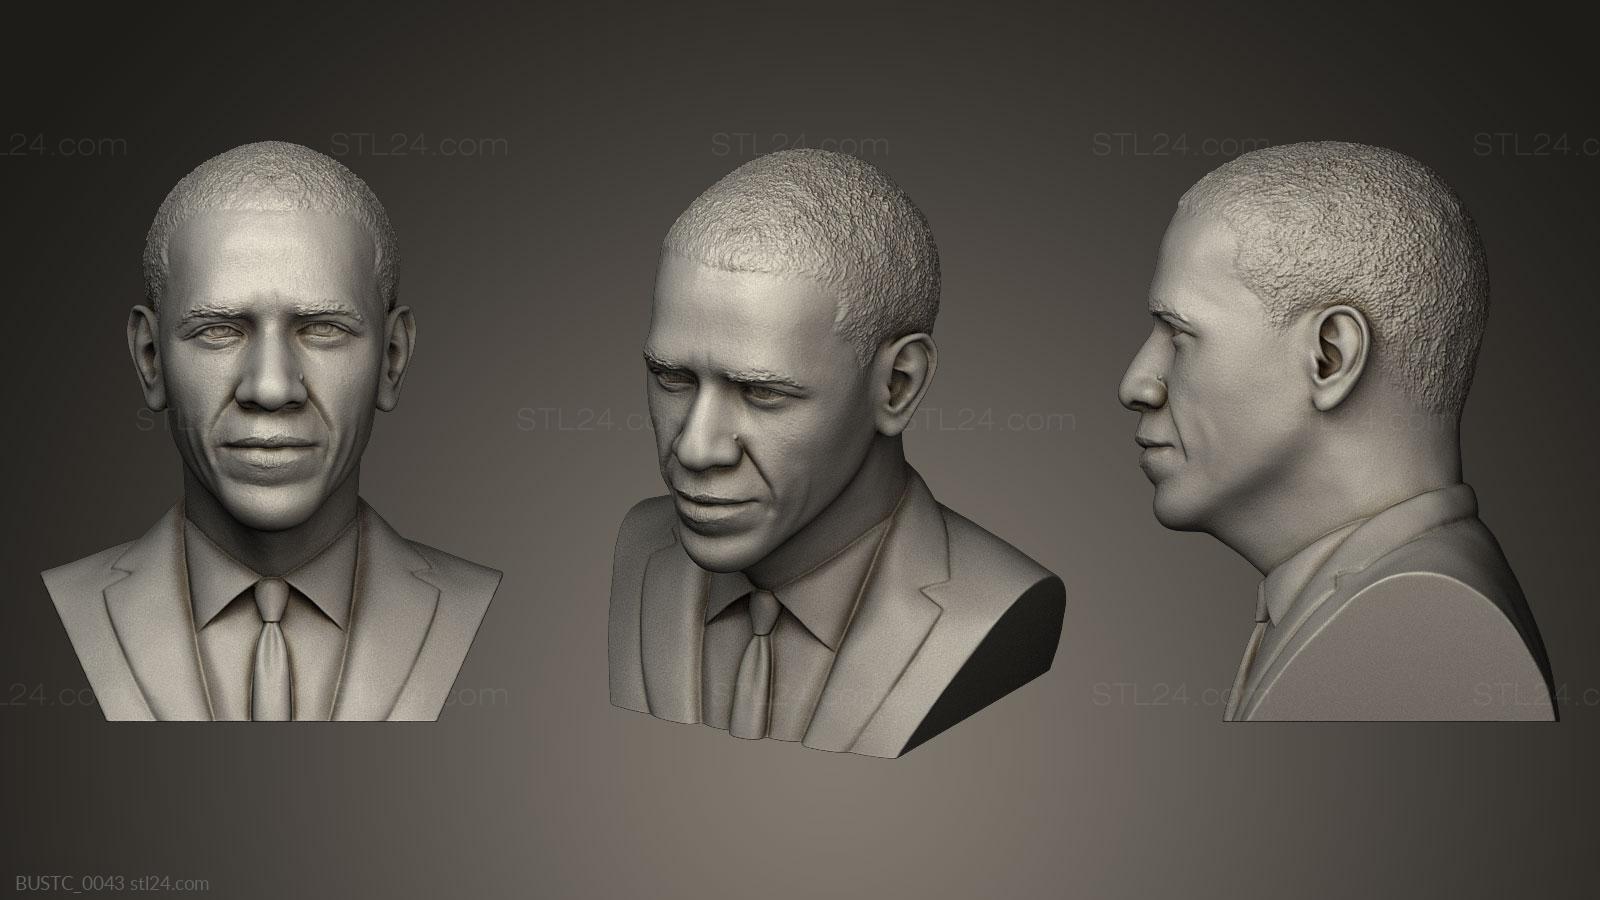 Бюсты и барельефы известных личностей (Барак Обама, BUSTC_0043) 3D модель для ЧПУ станка